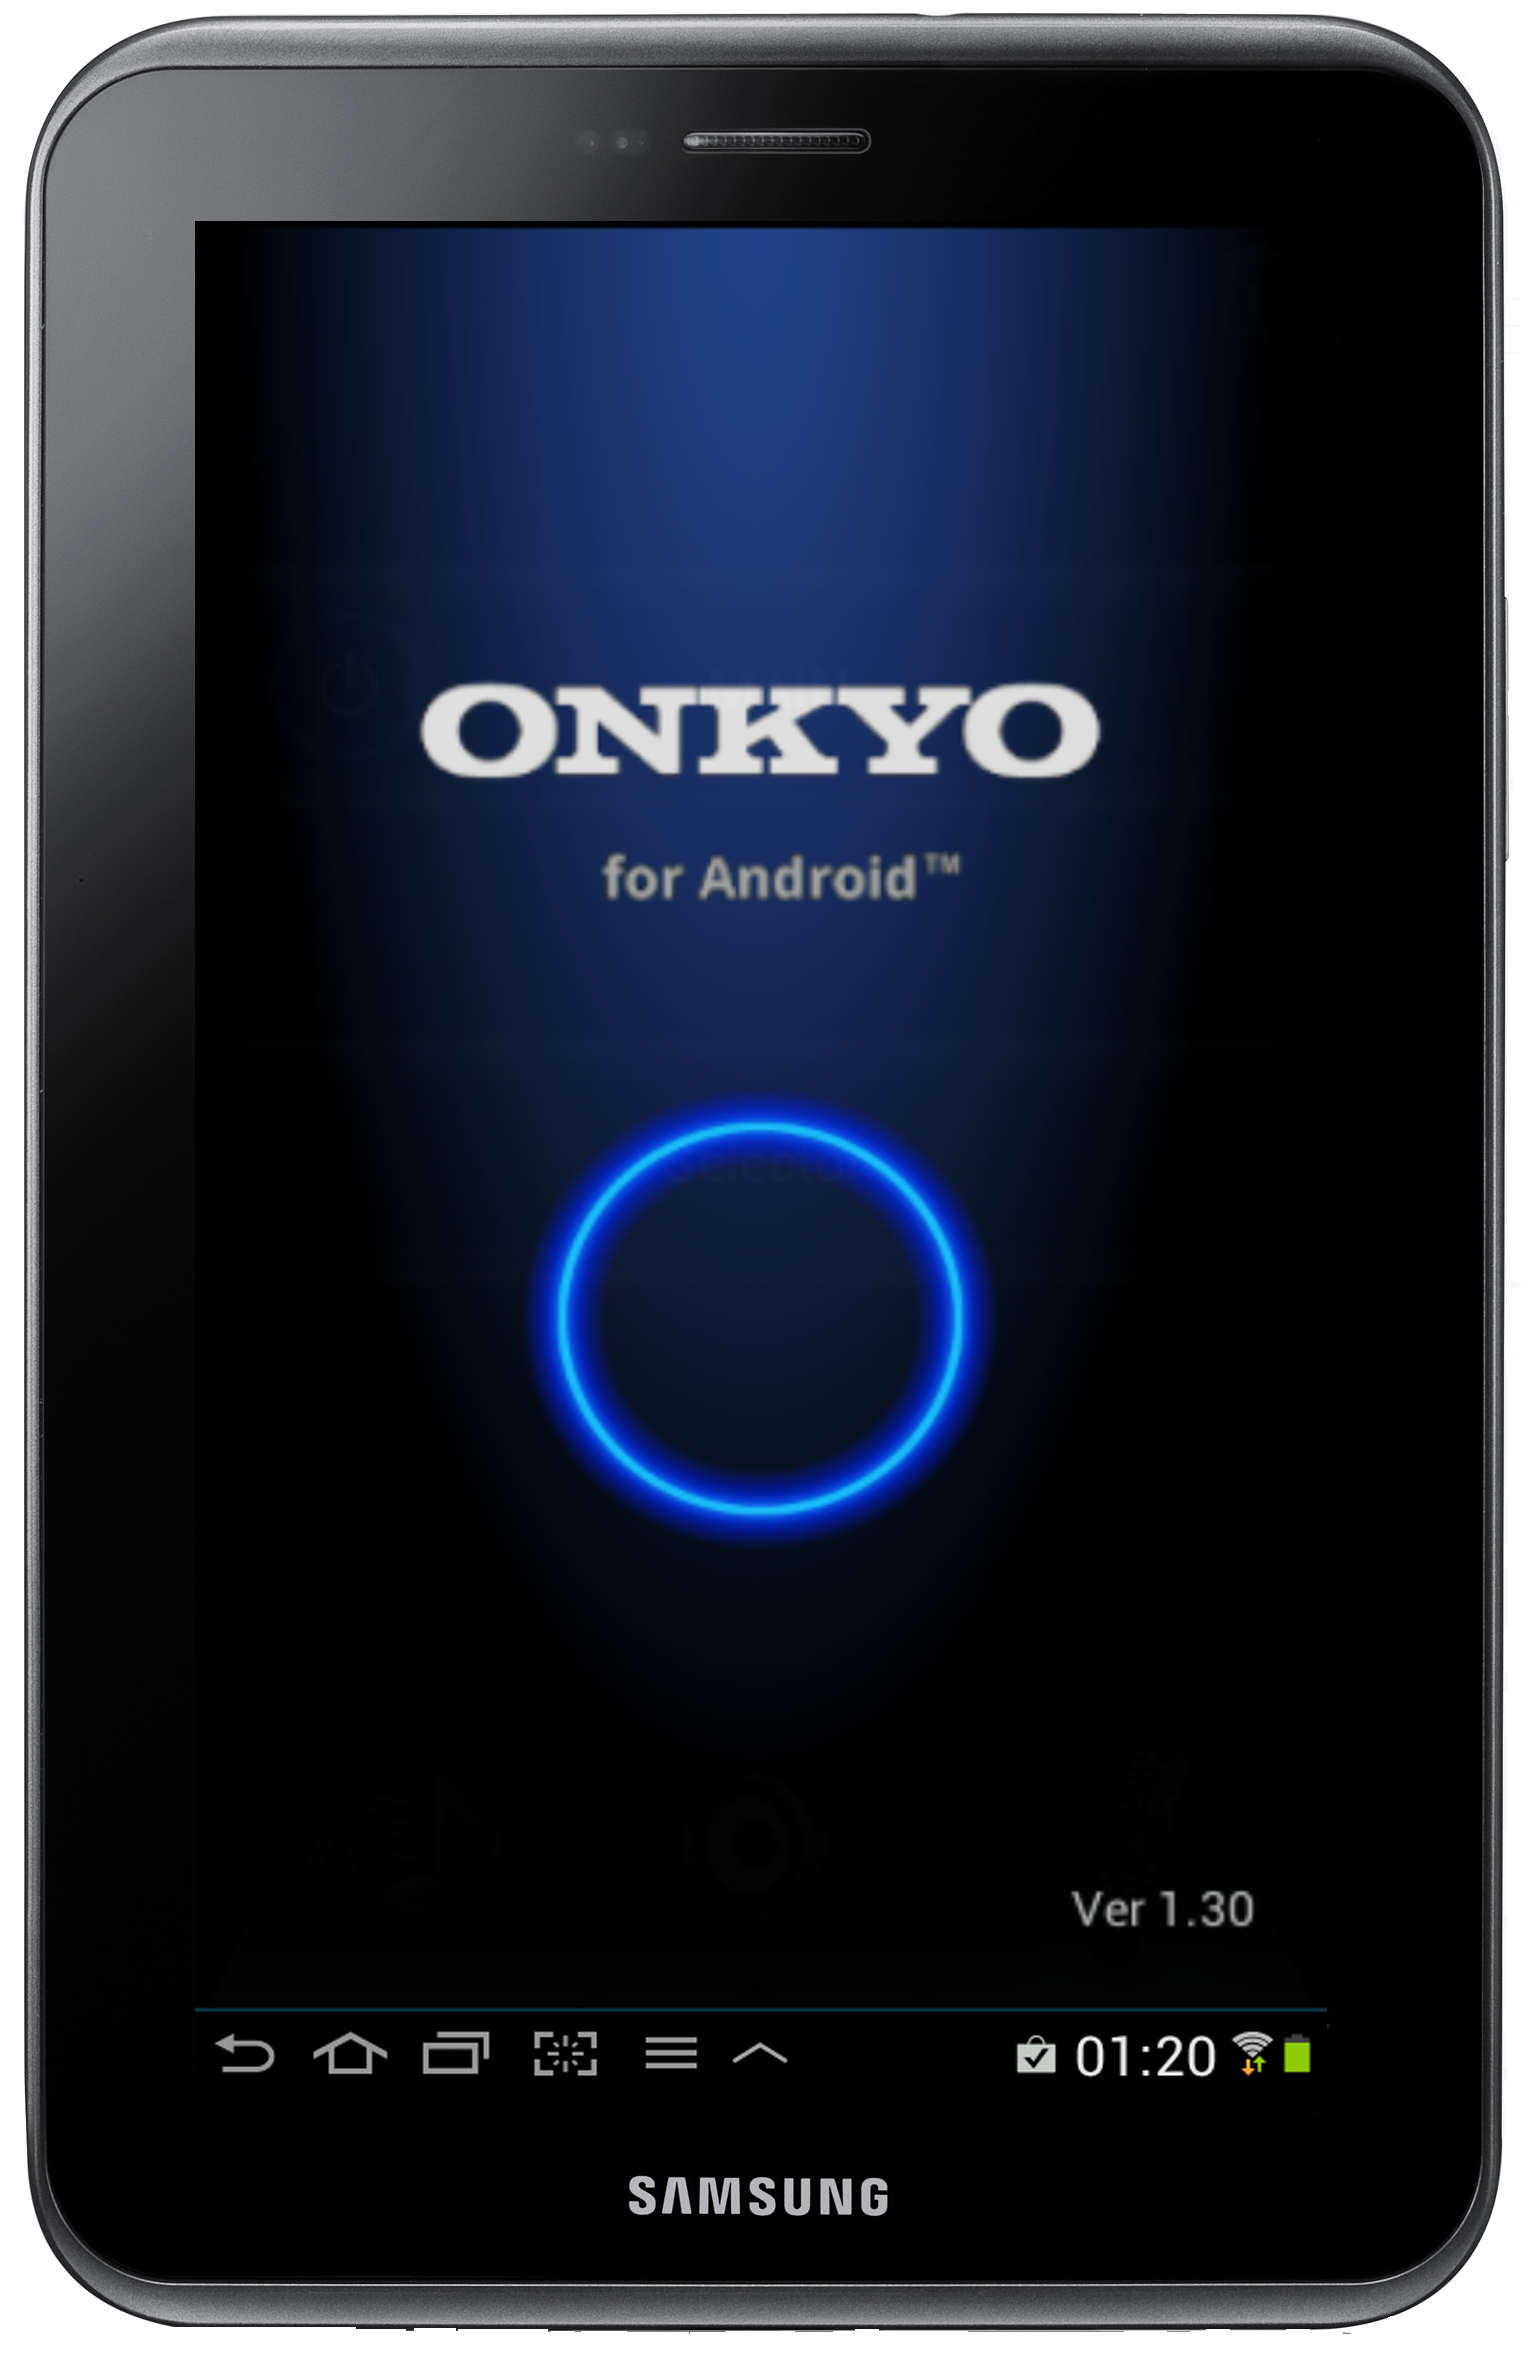 Onkyo sacará app en Android para controlar sus estéreos